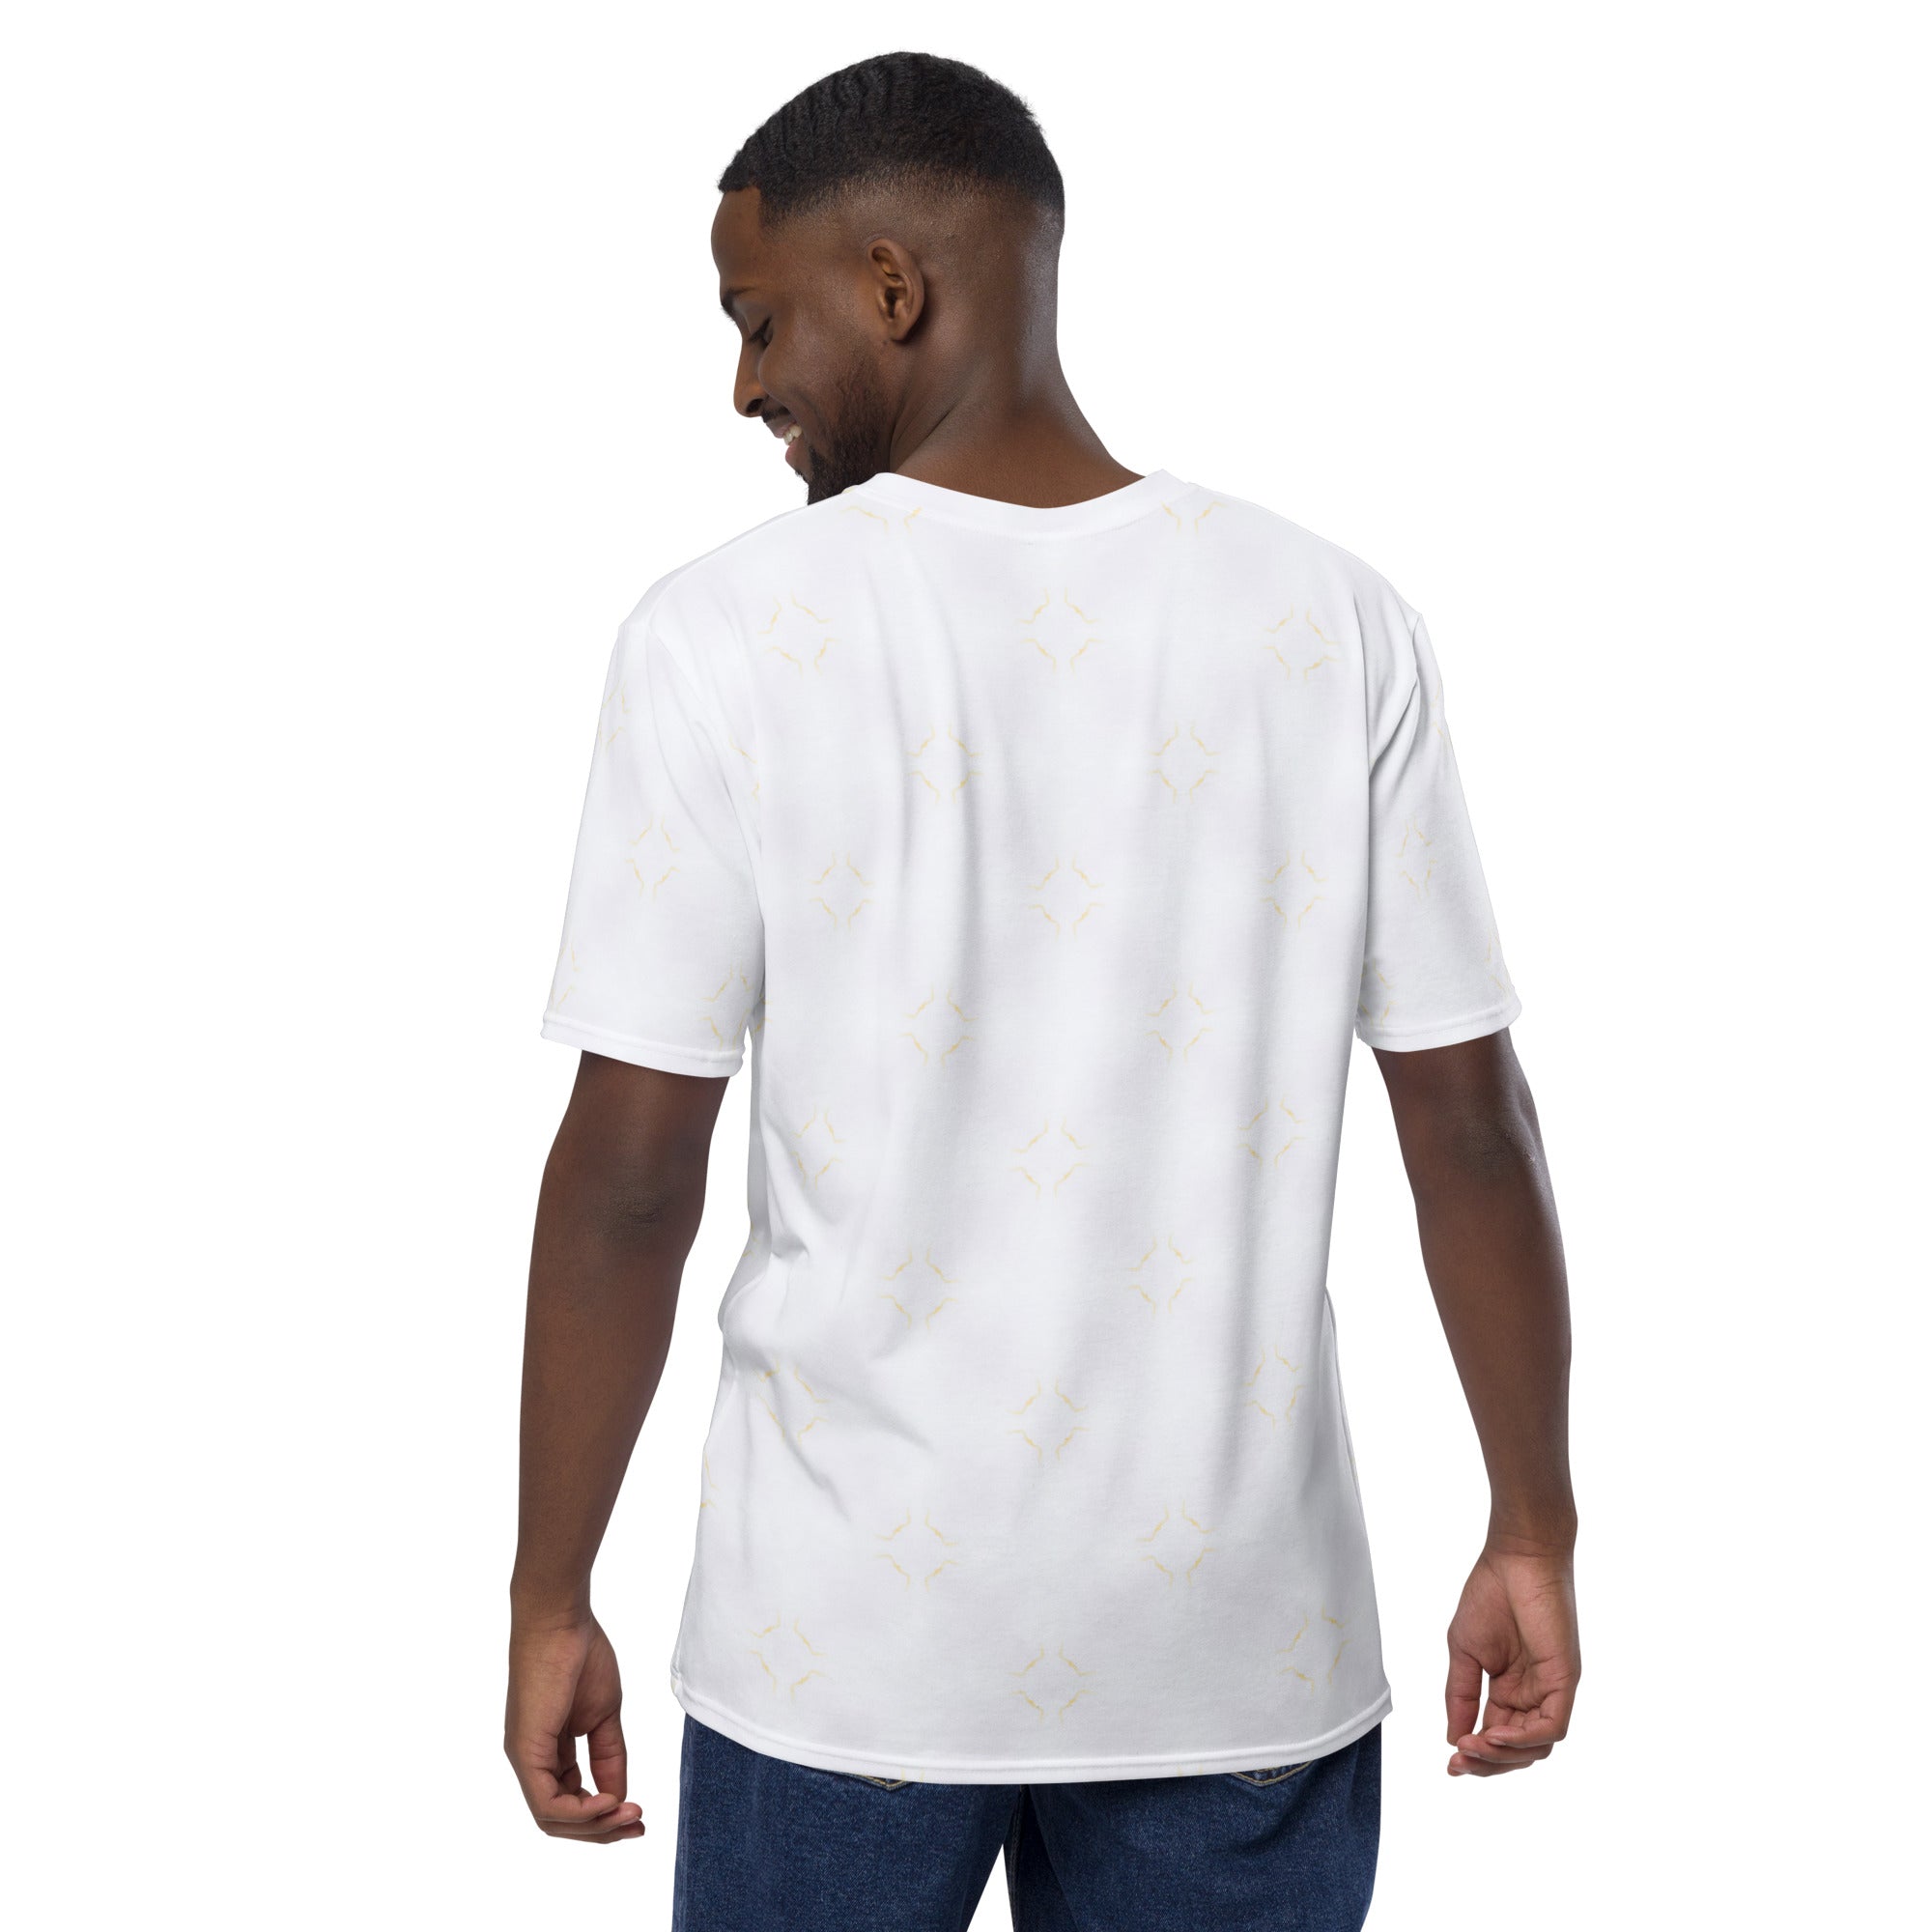 Men's stylish crew neck T-shirt with Nebula Origami design.